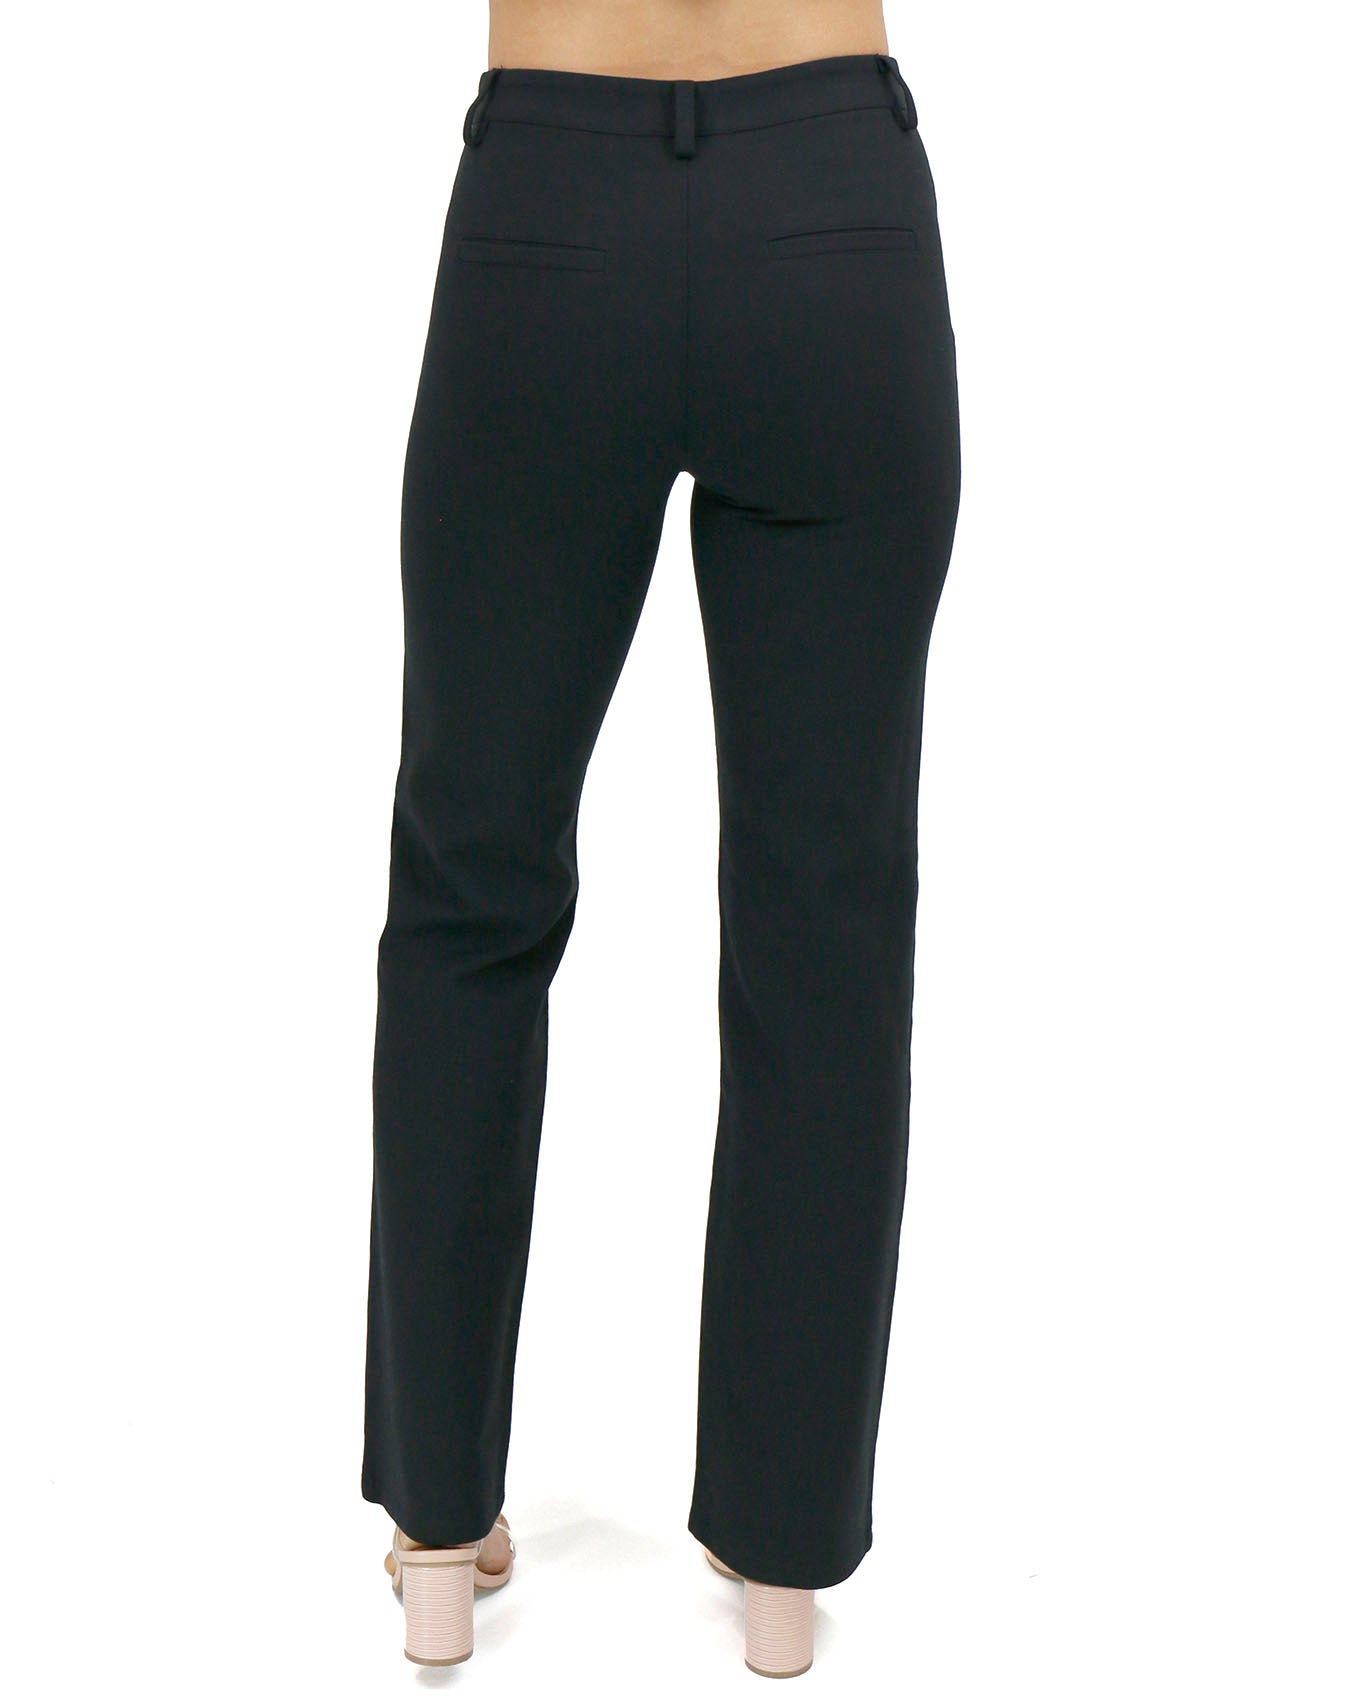 QUYUON Fishing Pants Deals Work Suit Casual Pants Elastic Waist Lace Up  Pants Long Pants Womans Pants Full Length Pant Leg Workwear Style P8947  Black